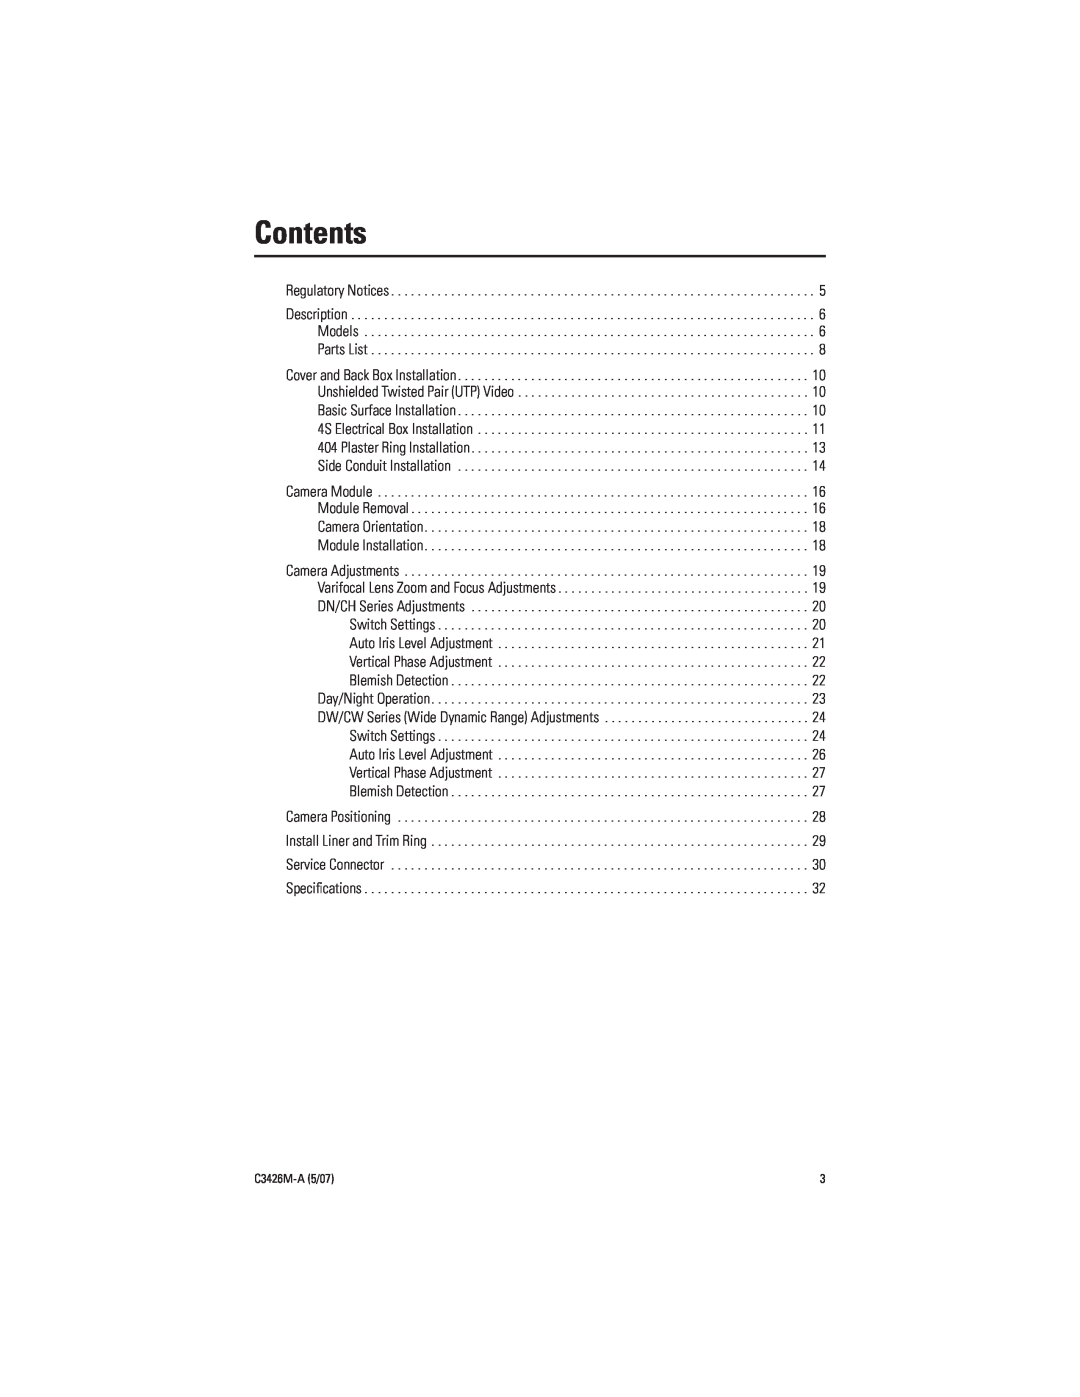 Pelco C3426M-A (5/07) manual Contents 